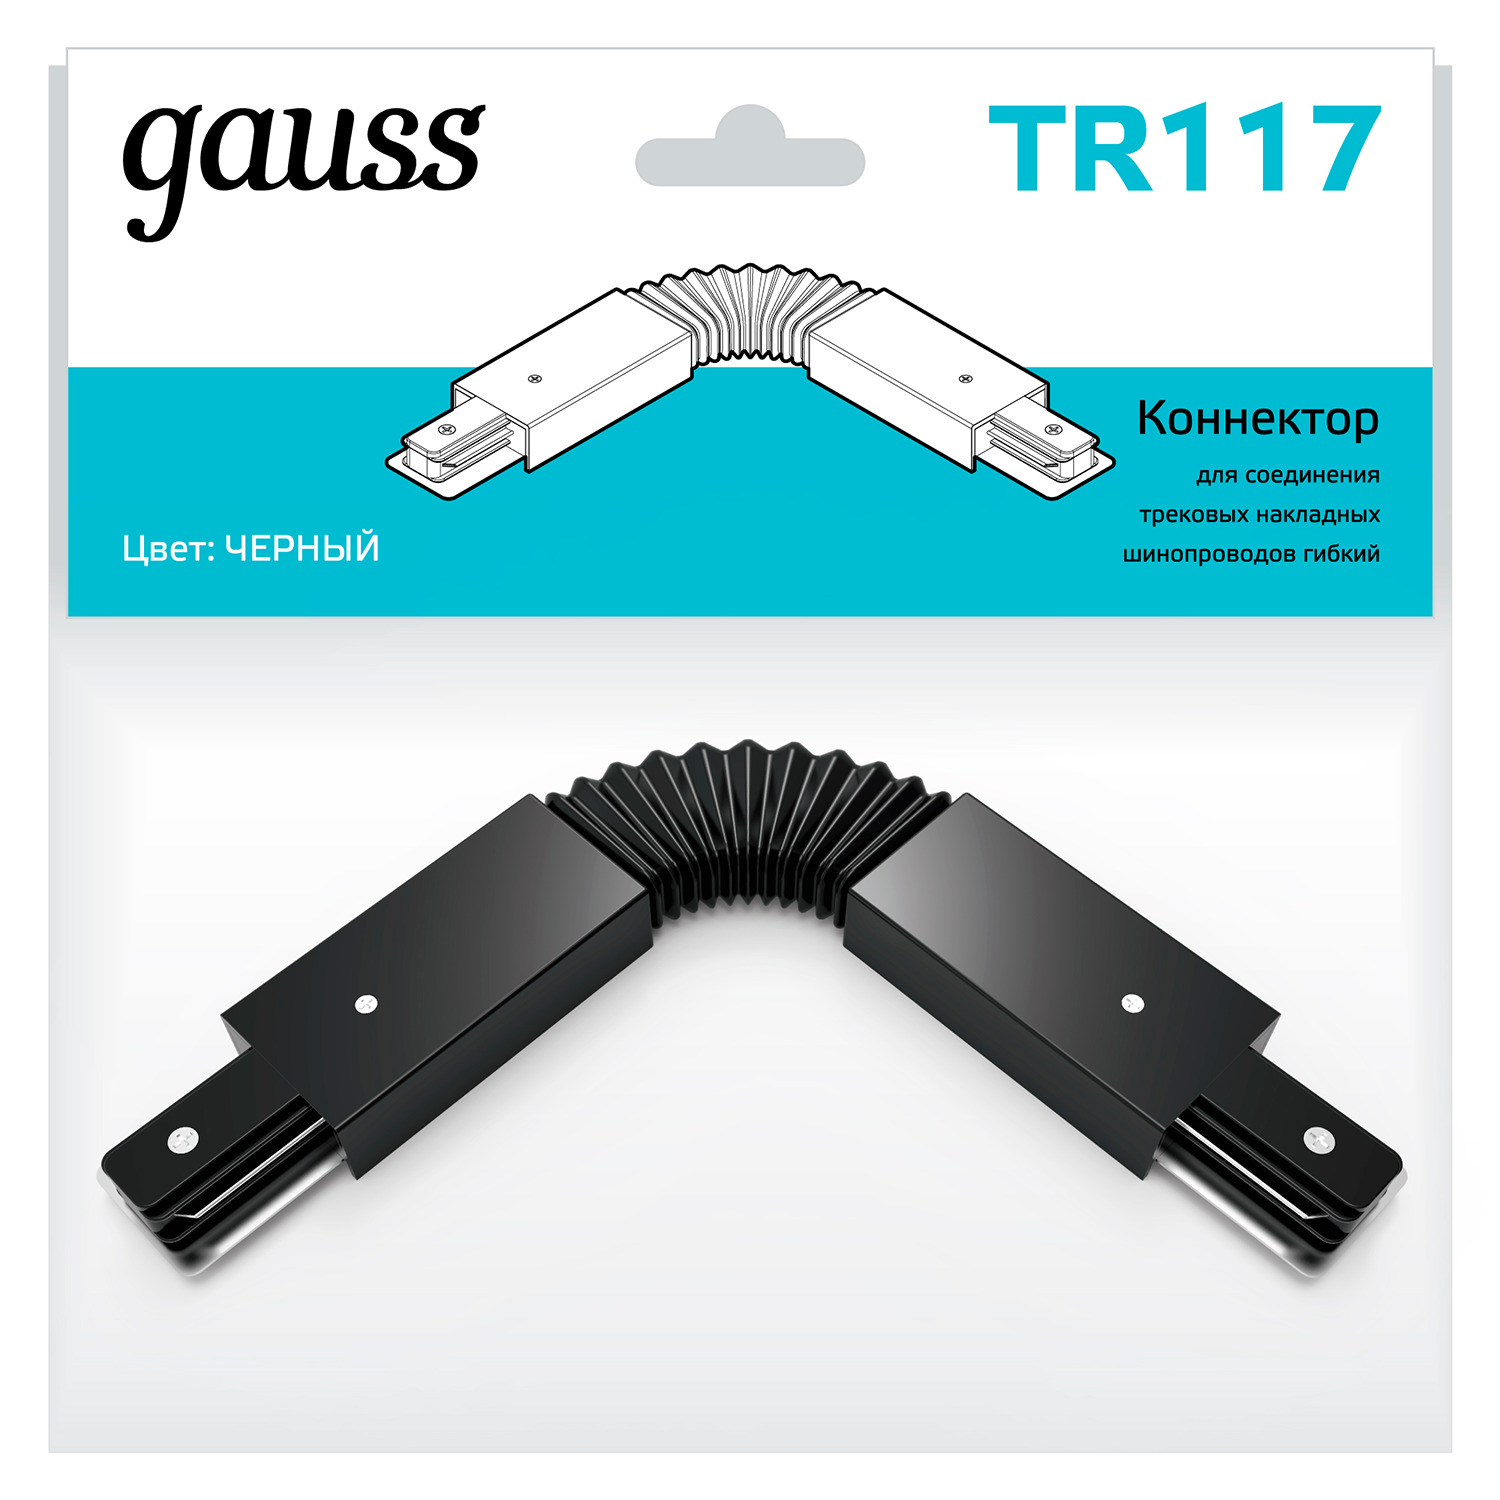 Коннектор Gauss для трековых шинопроводов гибкий (I) черный гибкий коннектор для встраиваемых трековых шинопроводов gauss